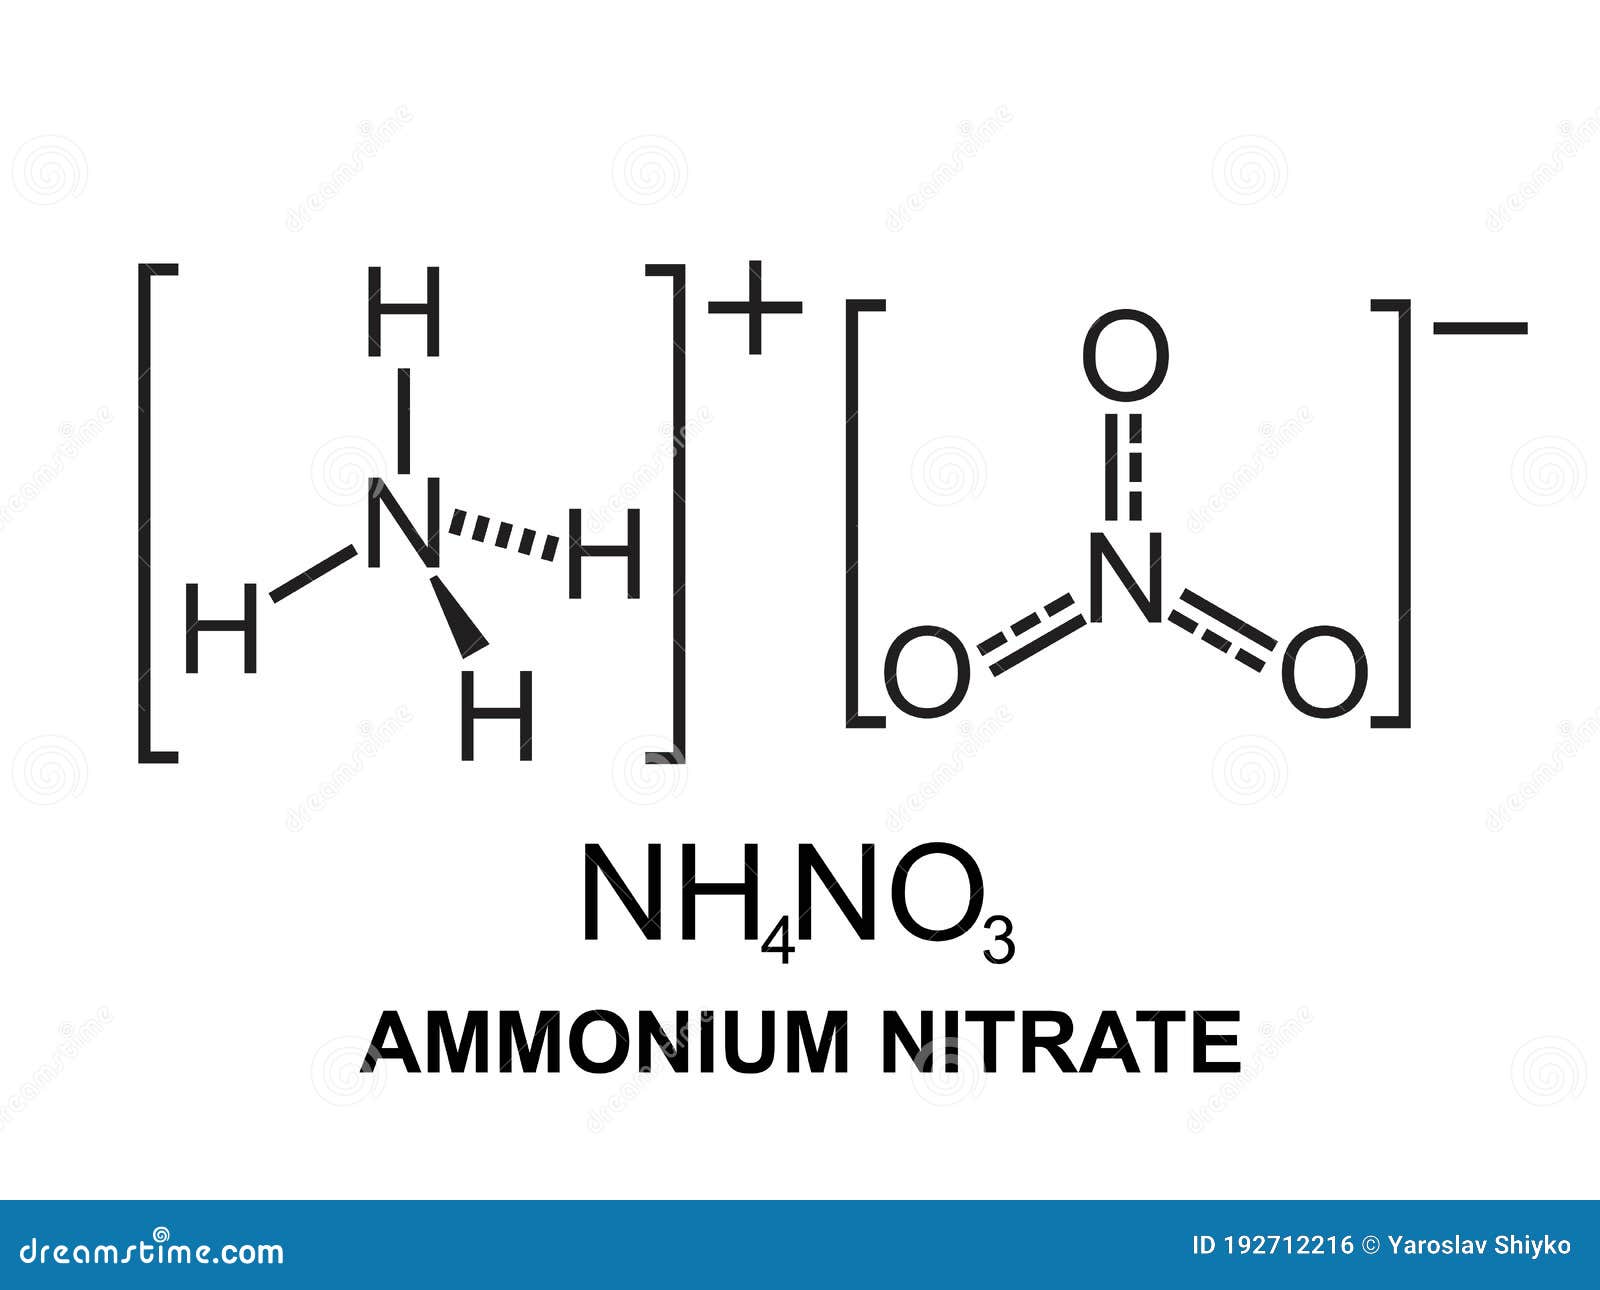 Нитраты нитриты формулы. Аммиачная селитра структурная формула. Аммиачная селитра формула химическая. Нитрат аммония графическая формула. Аммиачная селитра nh4no3.